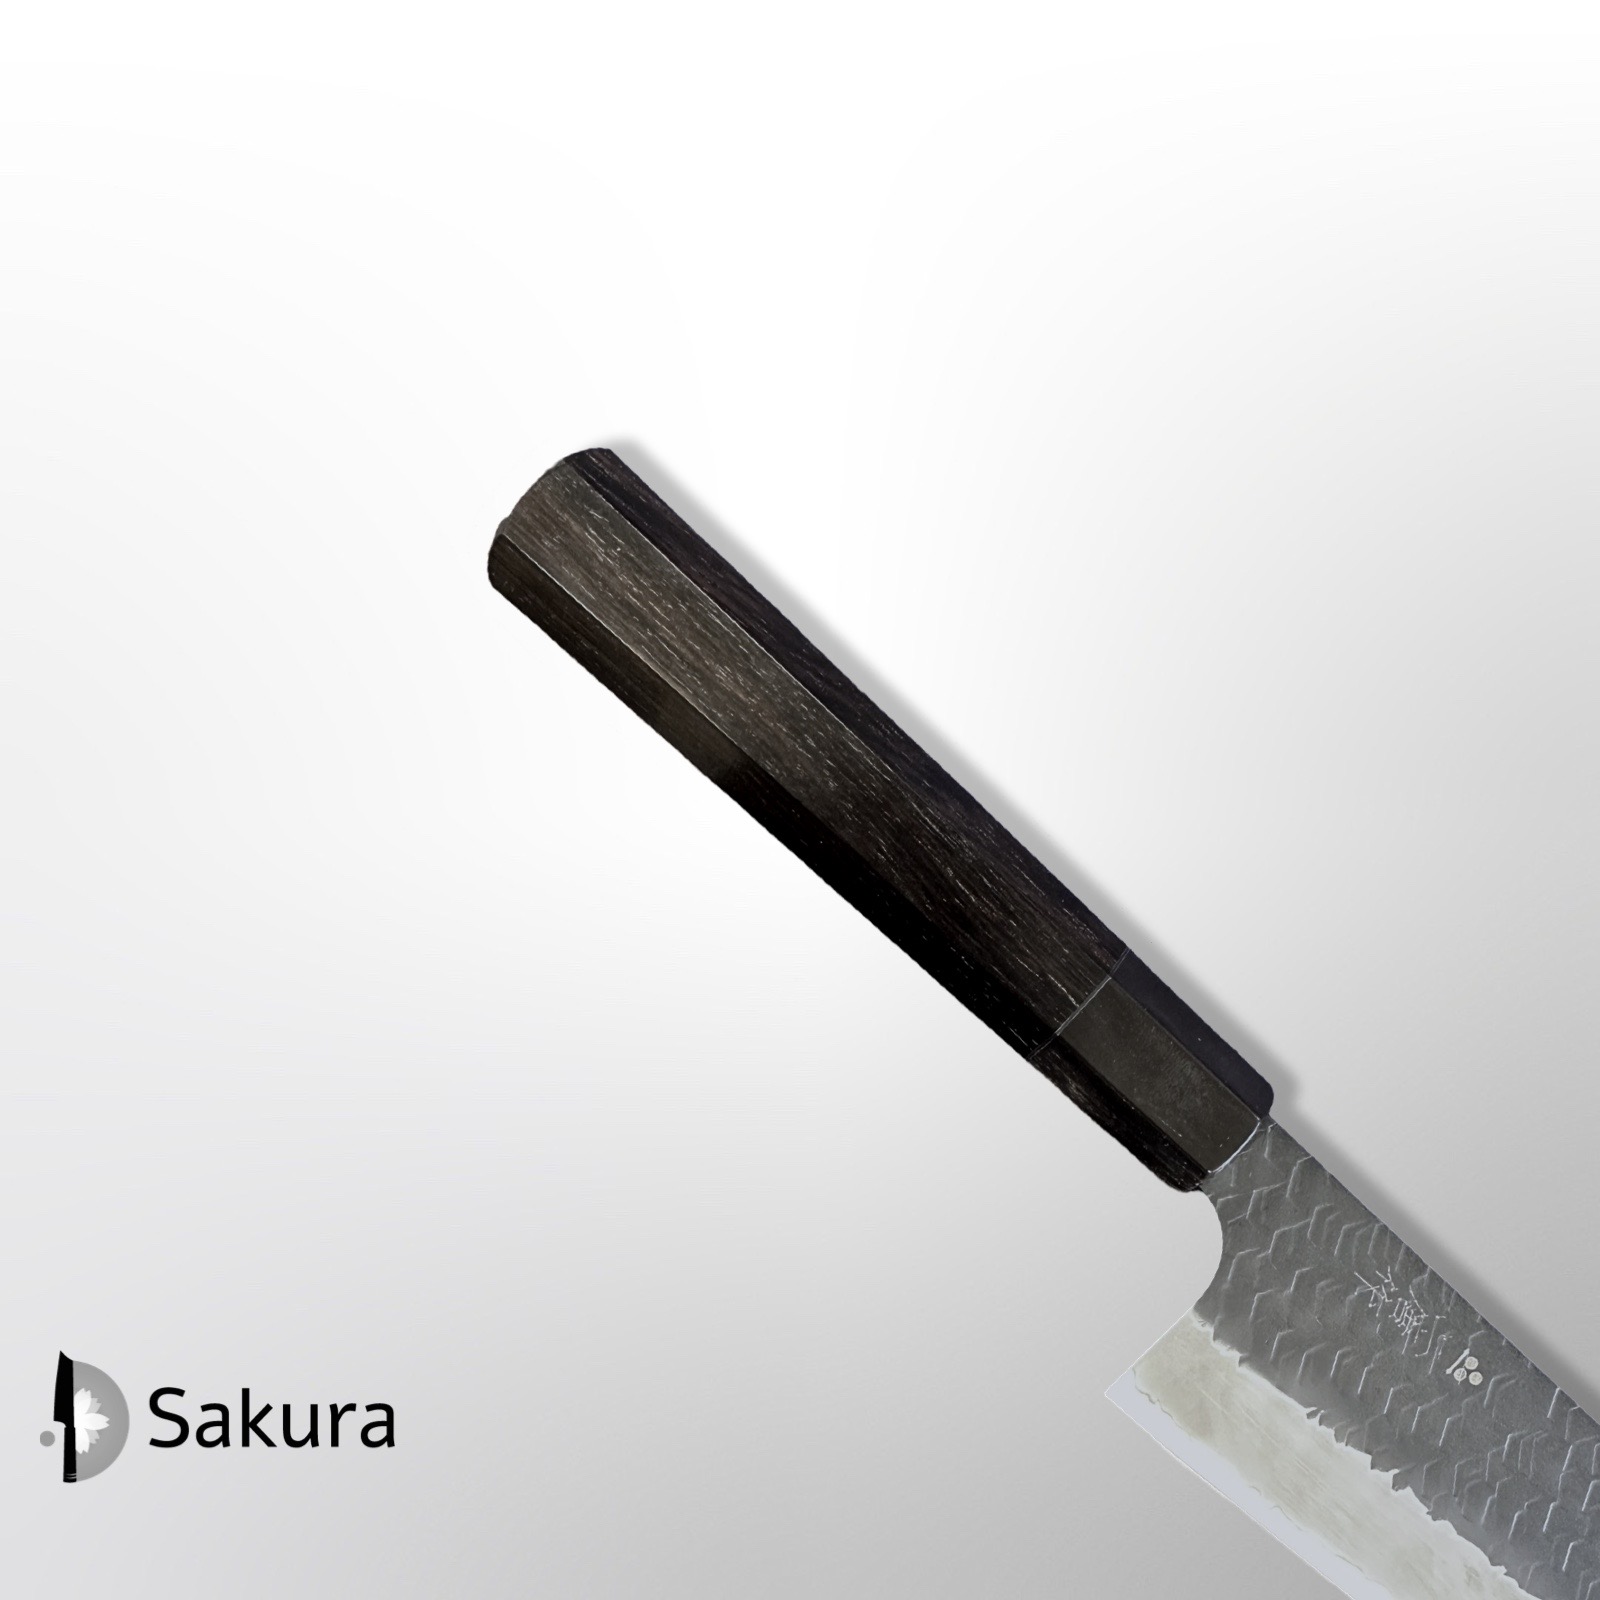 סכין שף רב-תכליתית גִּיוּטוֹ 270מ״מ מחושלת בעבודת יד 3 שכבות: פלדת פחמן יפנית מתקדמת מסוג R2/SG2 עטופה פלדת אל-חלד גימור קורואיצ׳י שחור עם ריקוע פטיש ניגארה יפן  SKNIGASG2GTKP2716